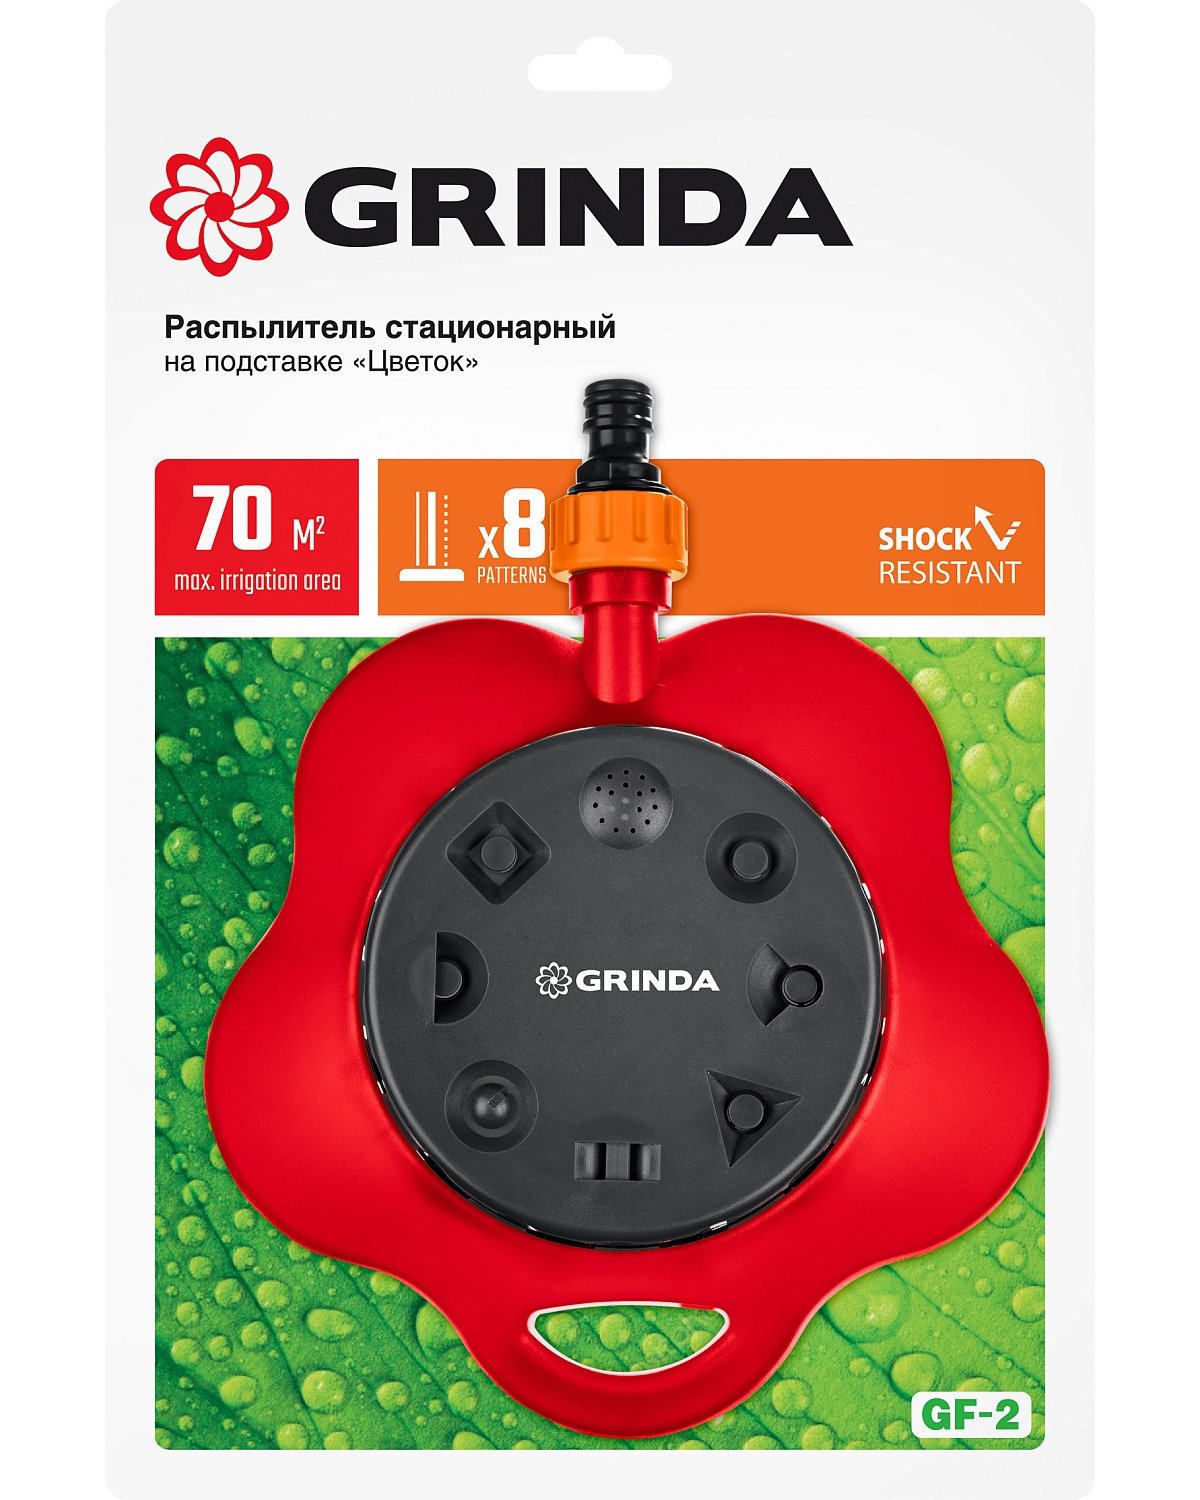 Стационарный распылитель GRINDA GF-2 подставке, пластиковый (8-427641_z01)